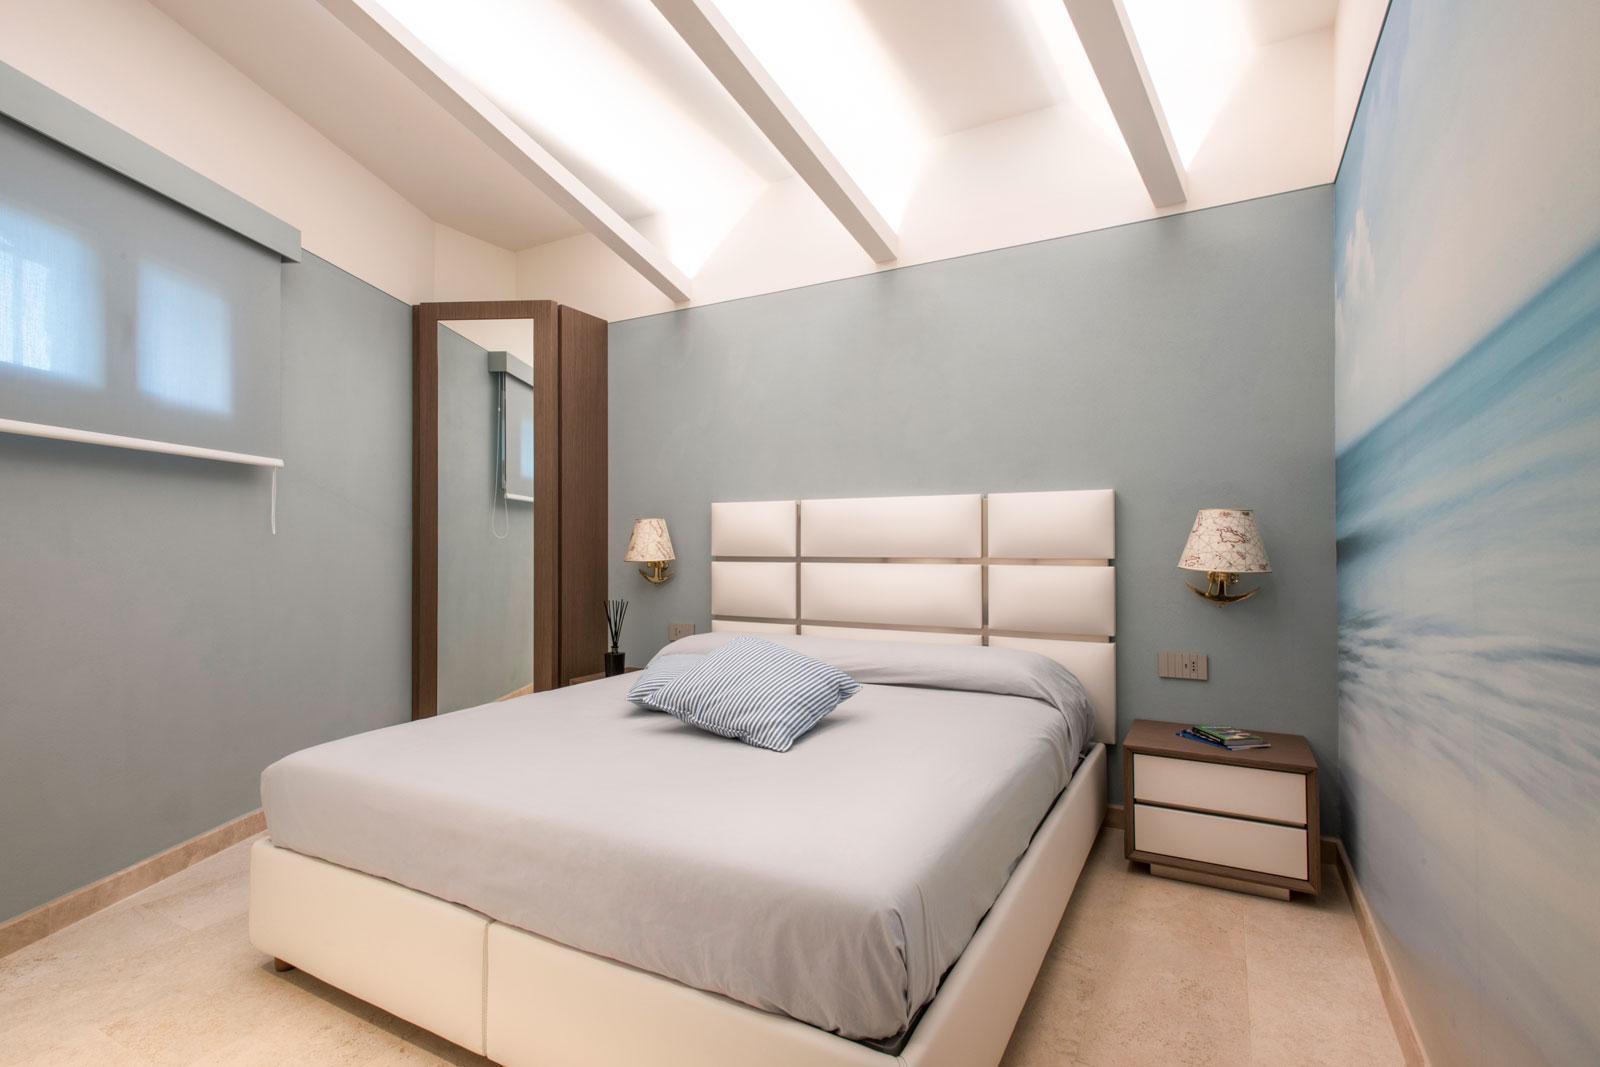 Camera da letto con pareti azzurre, testata in ecopelle bianca e finiture acciaio, armadio ad angolo con specchio